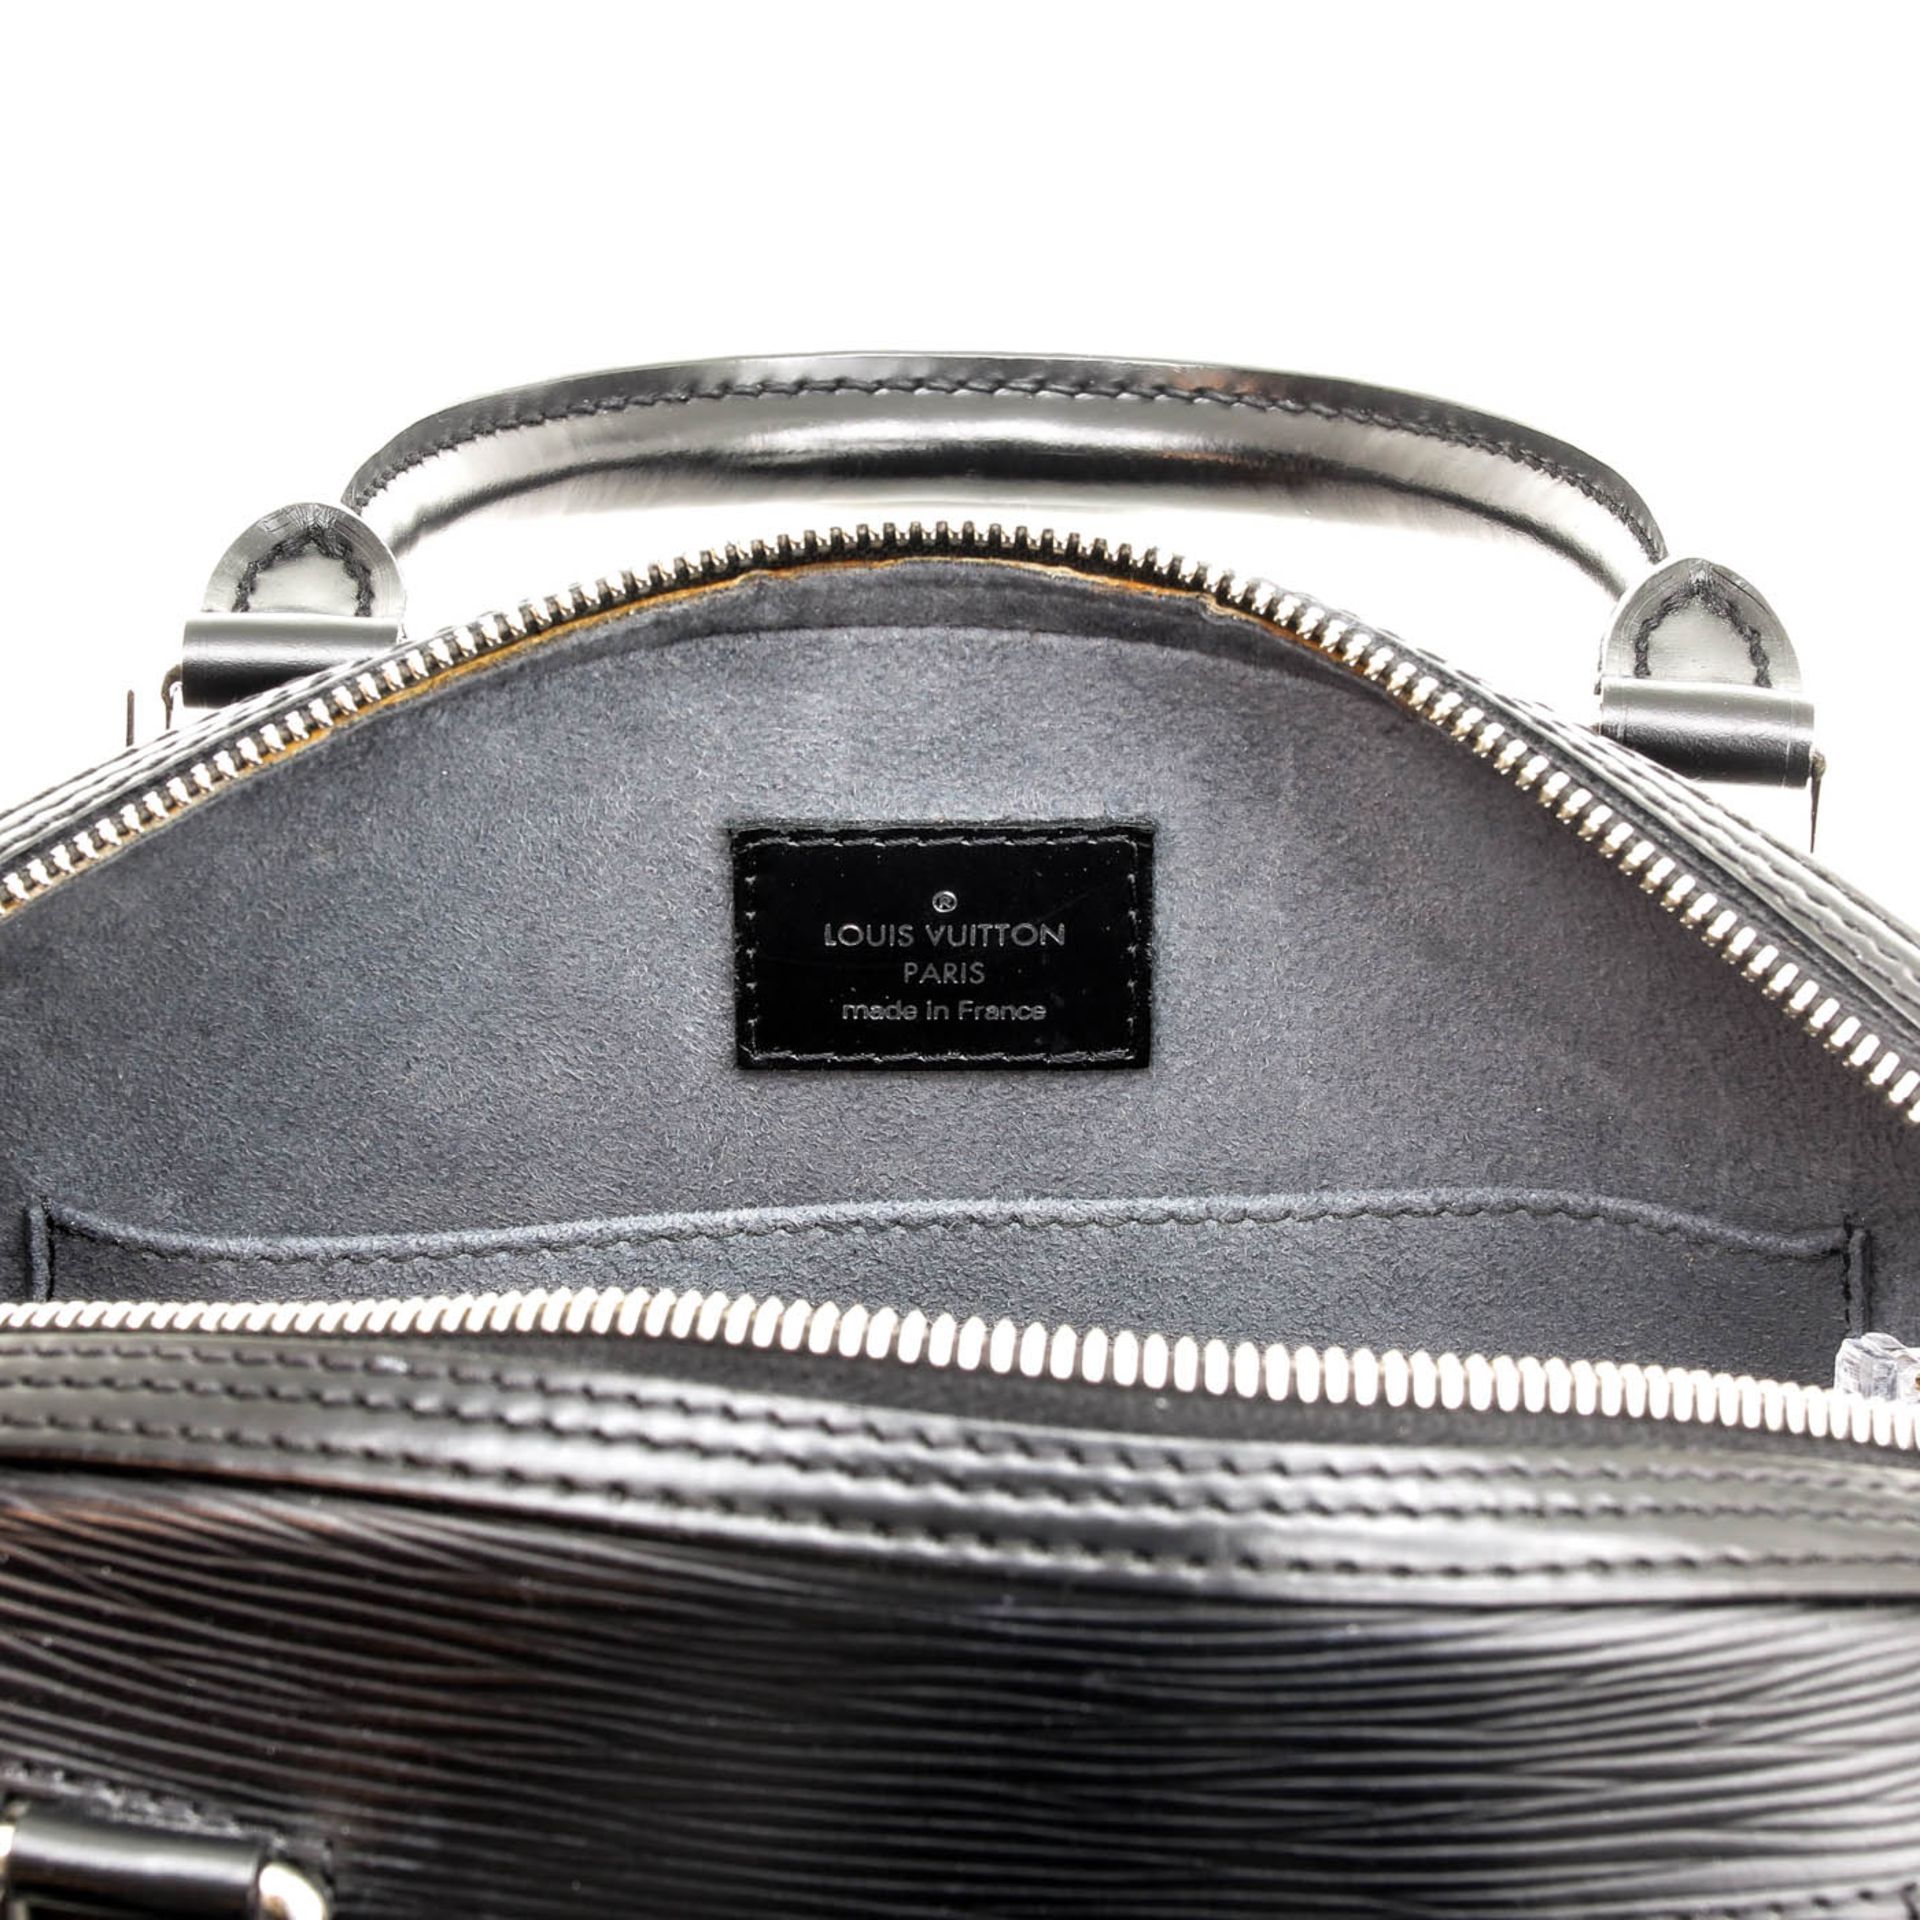 A Louis Vuitton Epi Leather Ladies Bag - Bild 5 aus 6